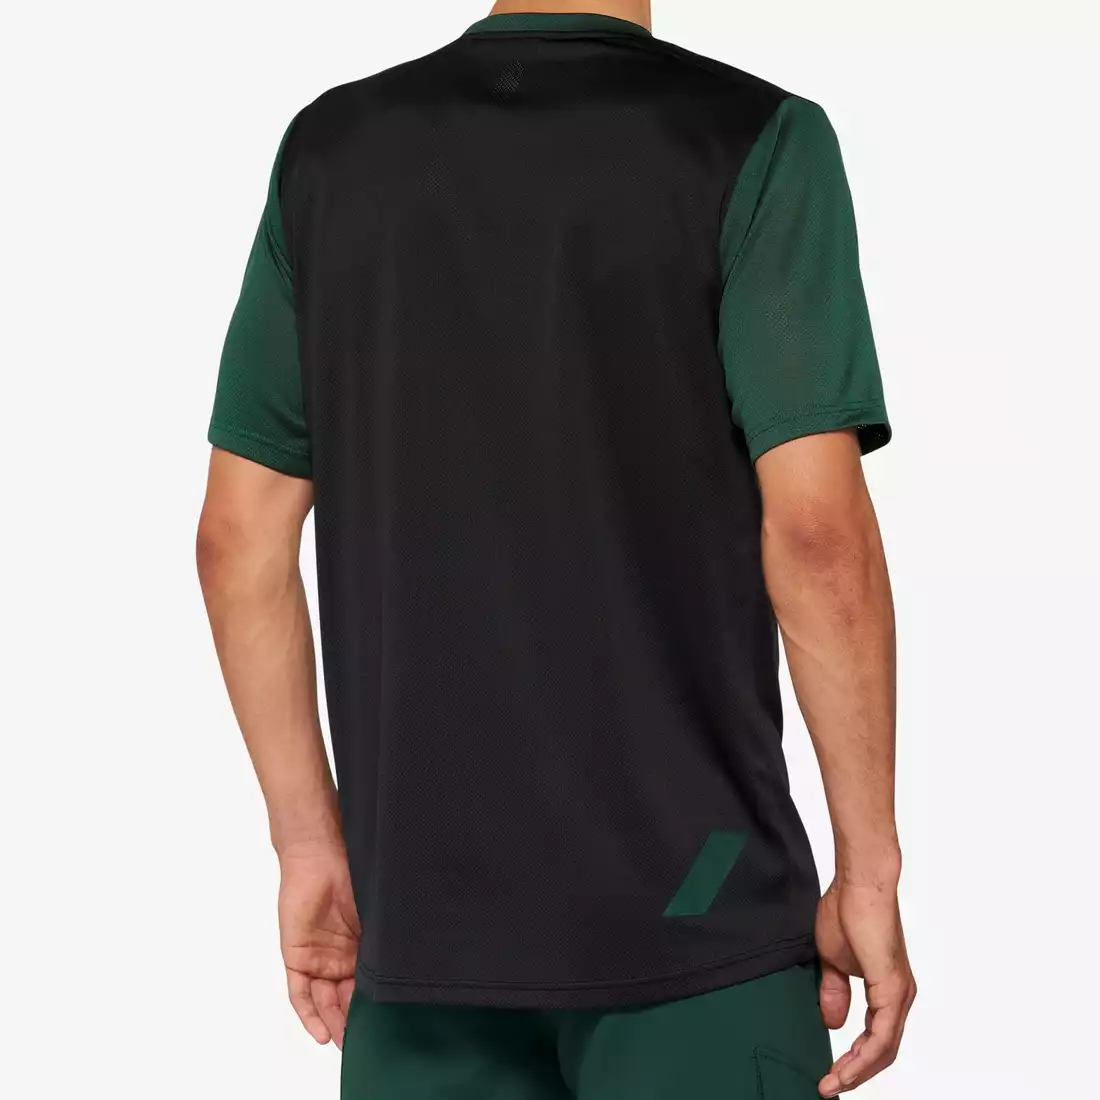 100% RIDECAMP tricou de ciclism pentru bărbați, black/forest green 